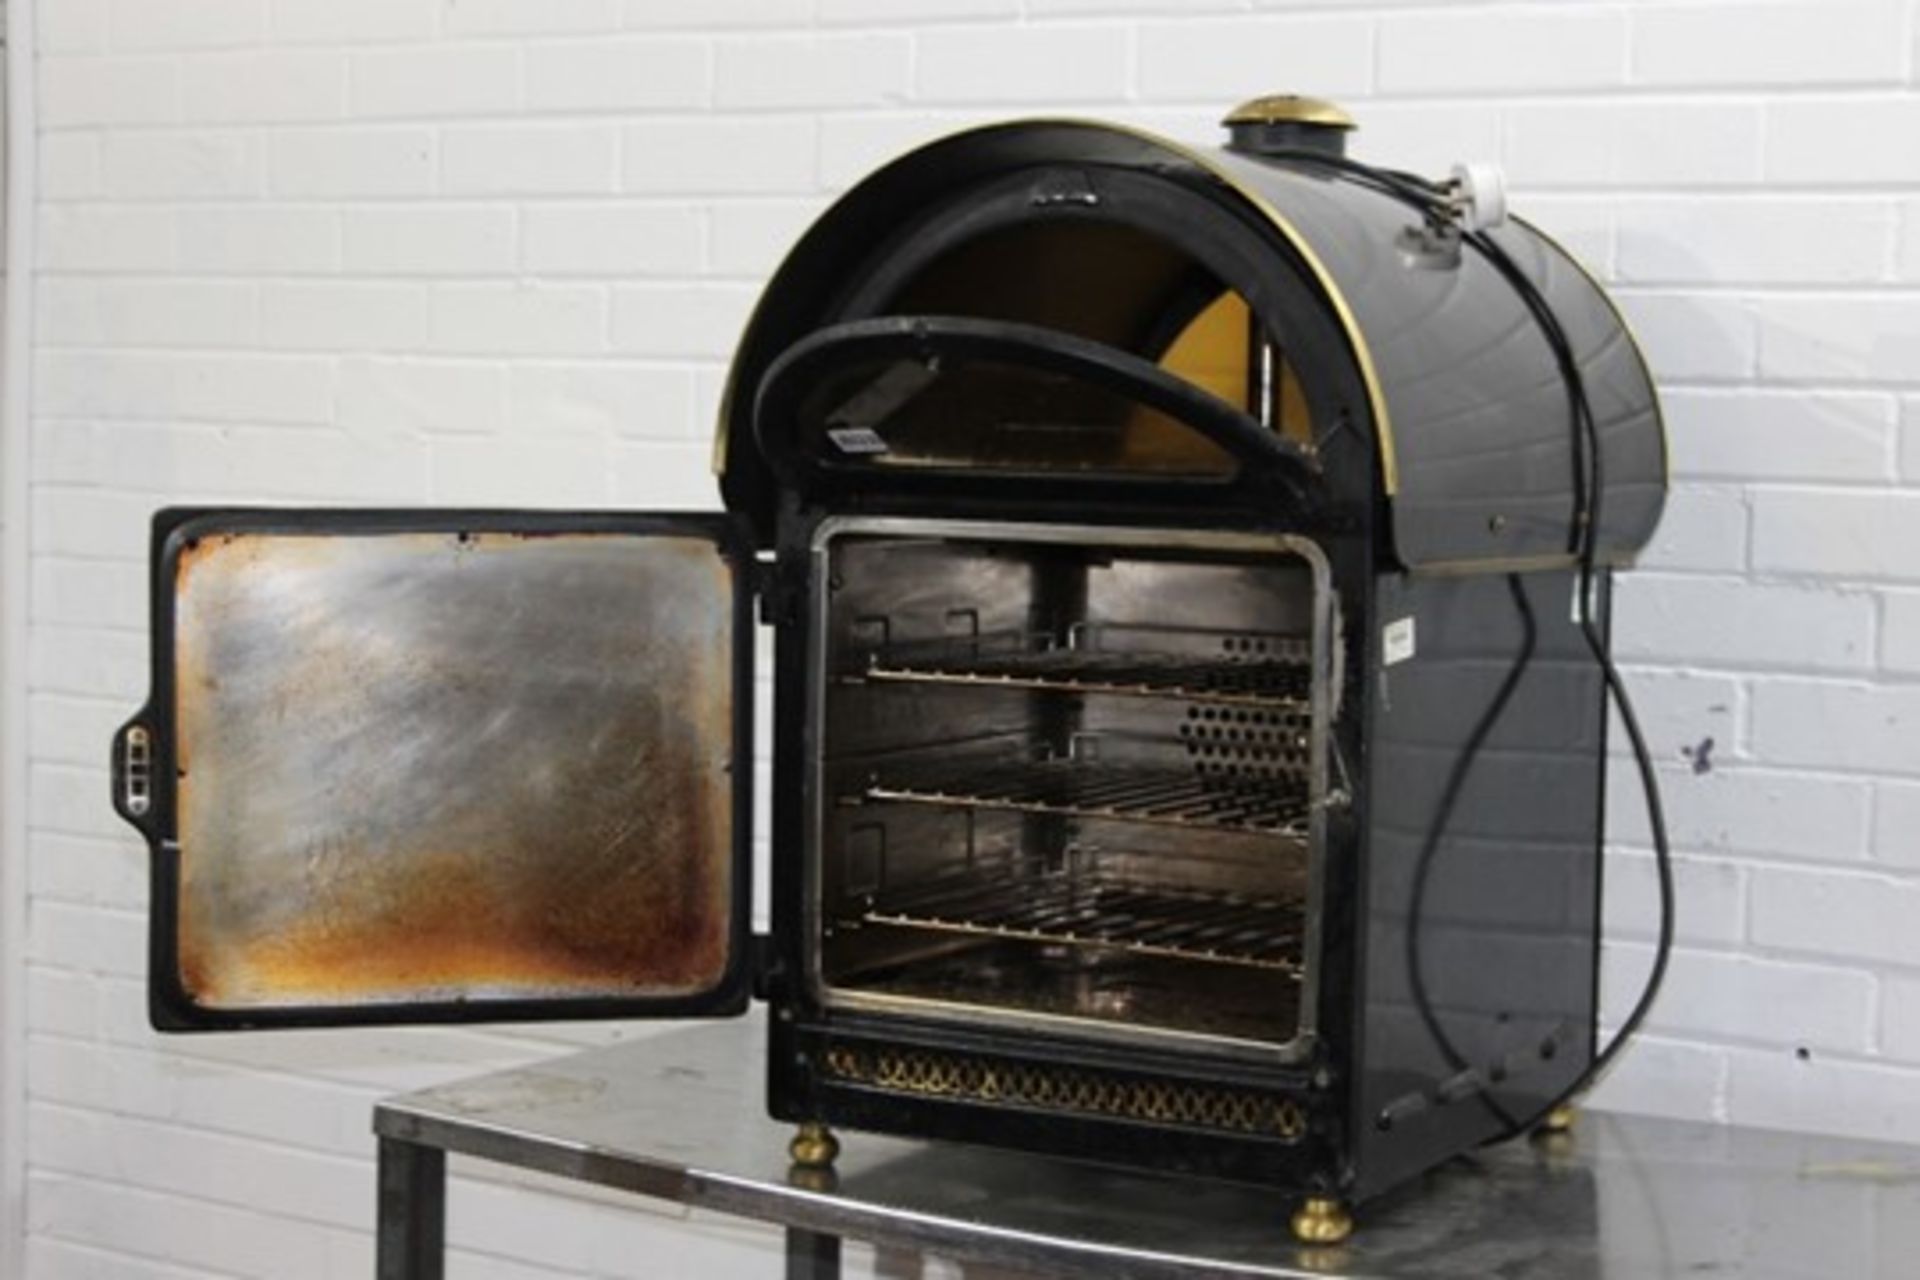 King Edward Jacket Potato Oven -1ph – Tested Working - Image 2 of 2